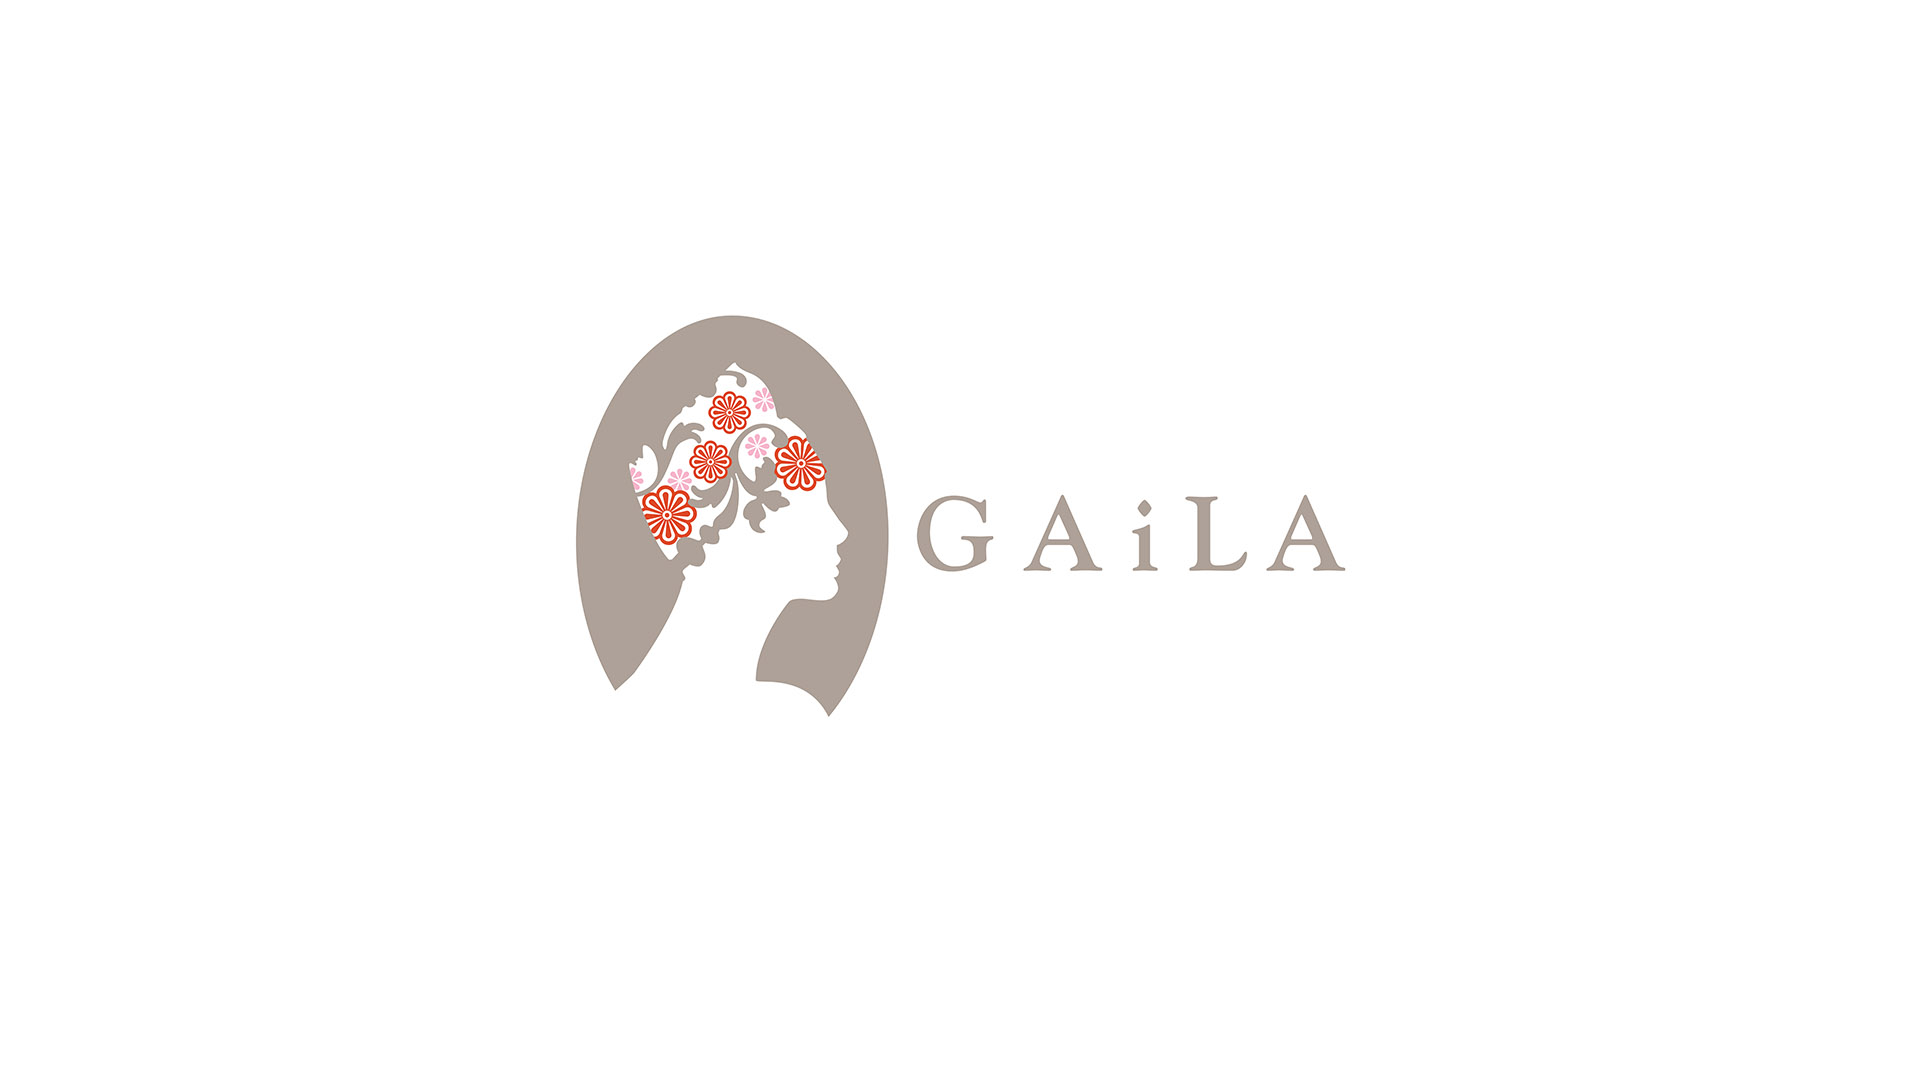 gaila logo on white